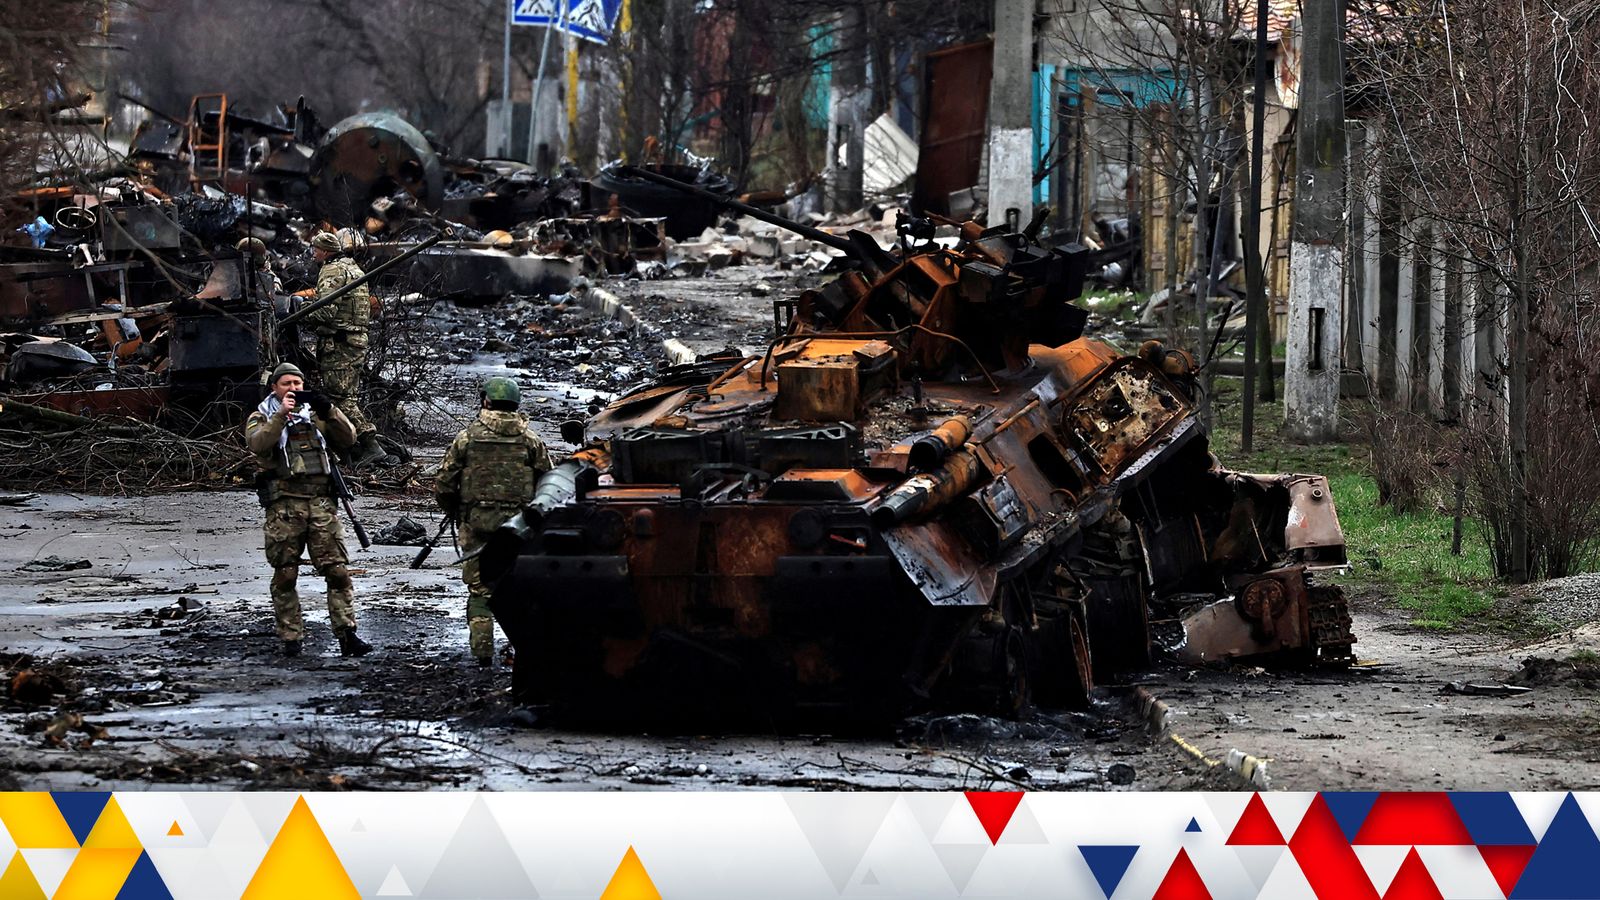 الحرب في أوكرانيا: القوات الروسية تنسحب من بوتشا ومدنيون يرقدون قتلى في الشوارع |  اخبار العالم